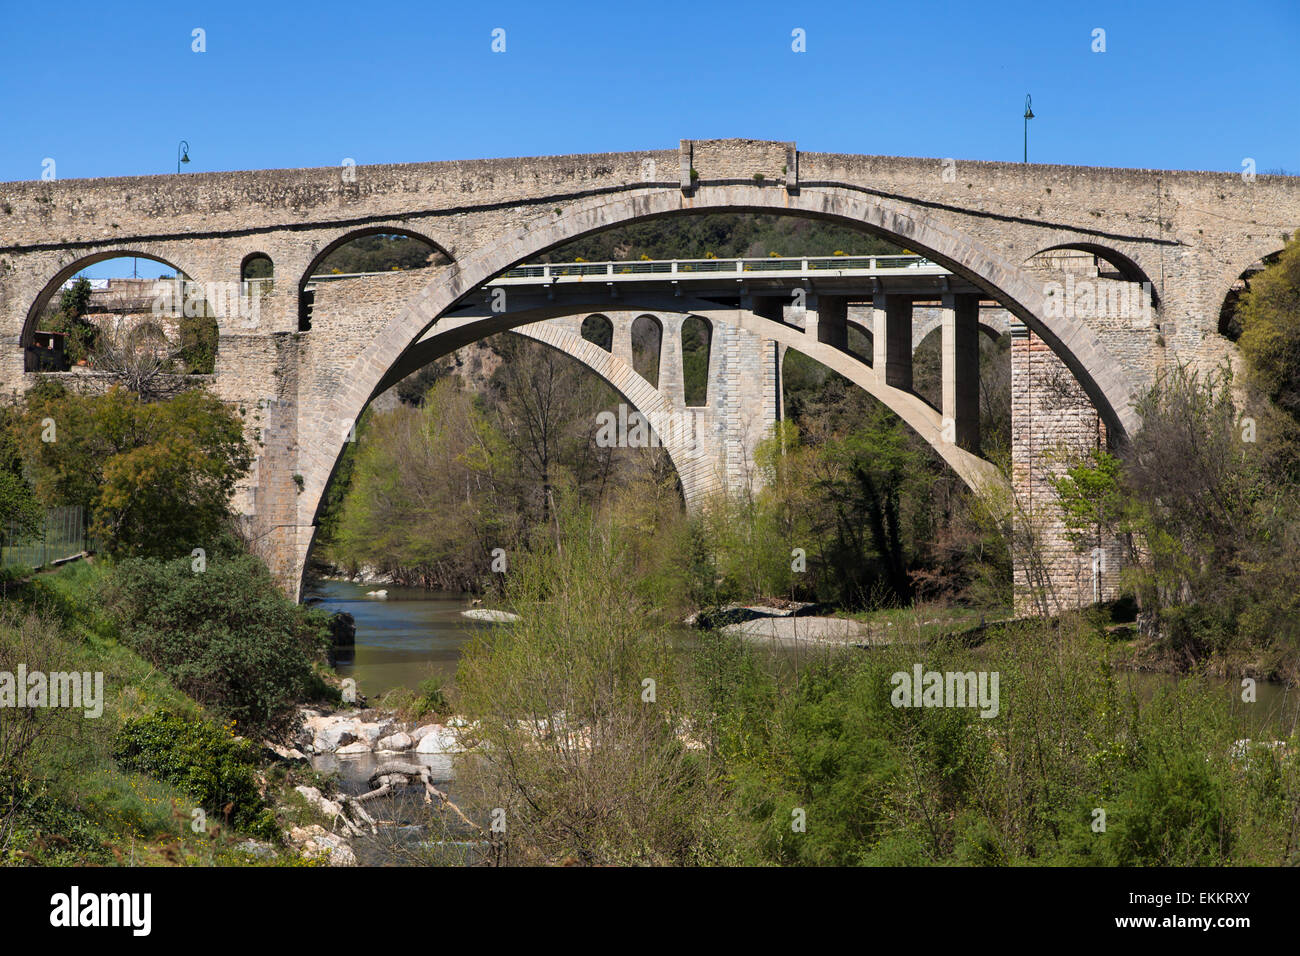 Medieval stone arch bridge Pont du Diable in Ceret, Languedoc-Roussillon, France. Stock Photo